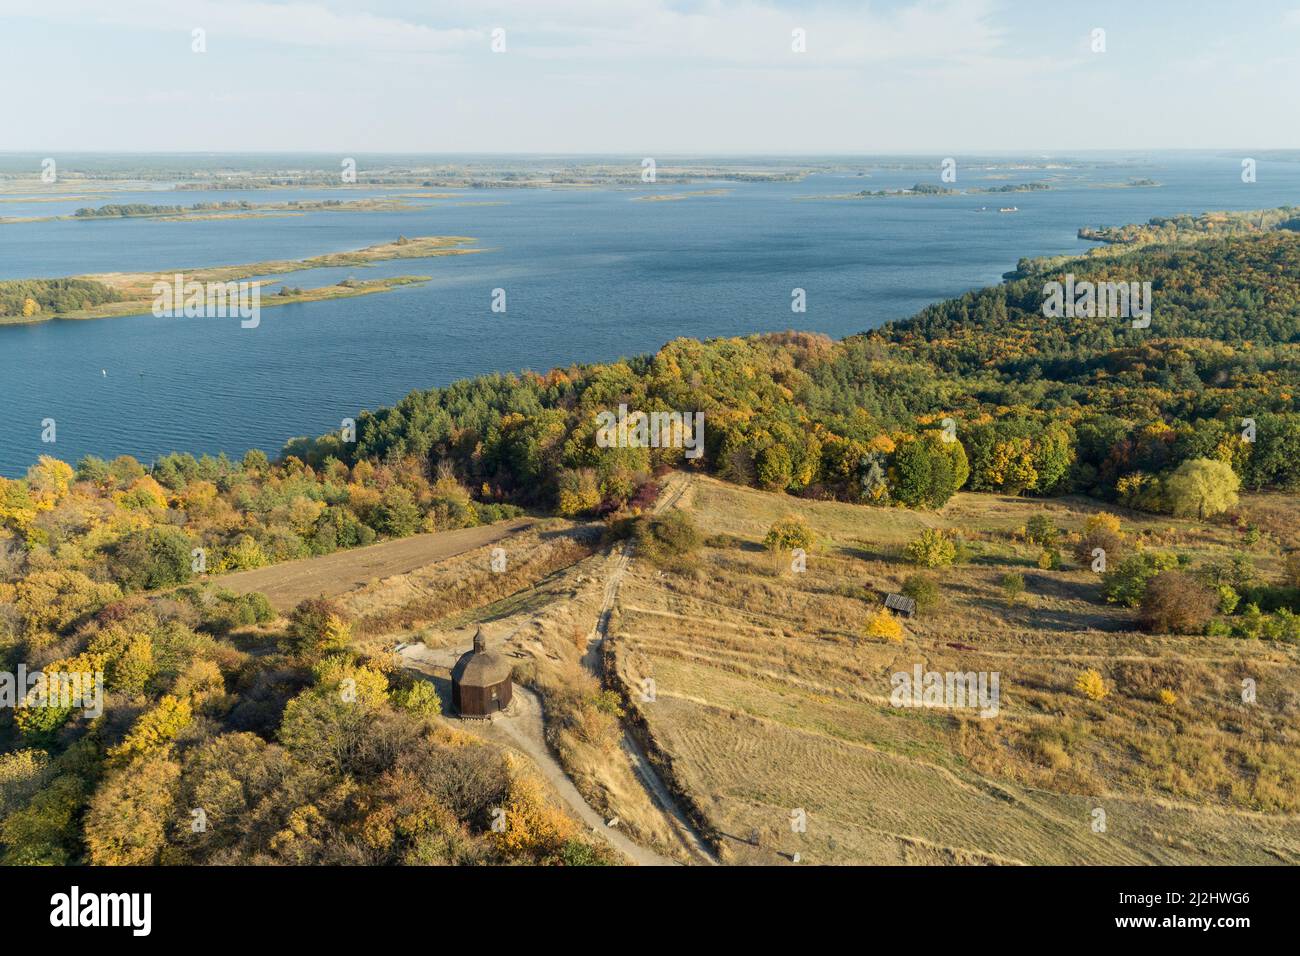 Automne magnifique vue panoramique aérienne de Vitachov (Vytachov) sur un fleuve Dneper, Ukraine. Excursions d'une journée autour de Kiev, Ukraine Banque D'Images